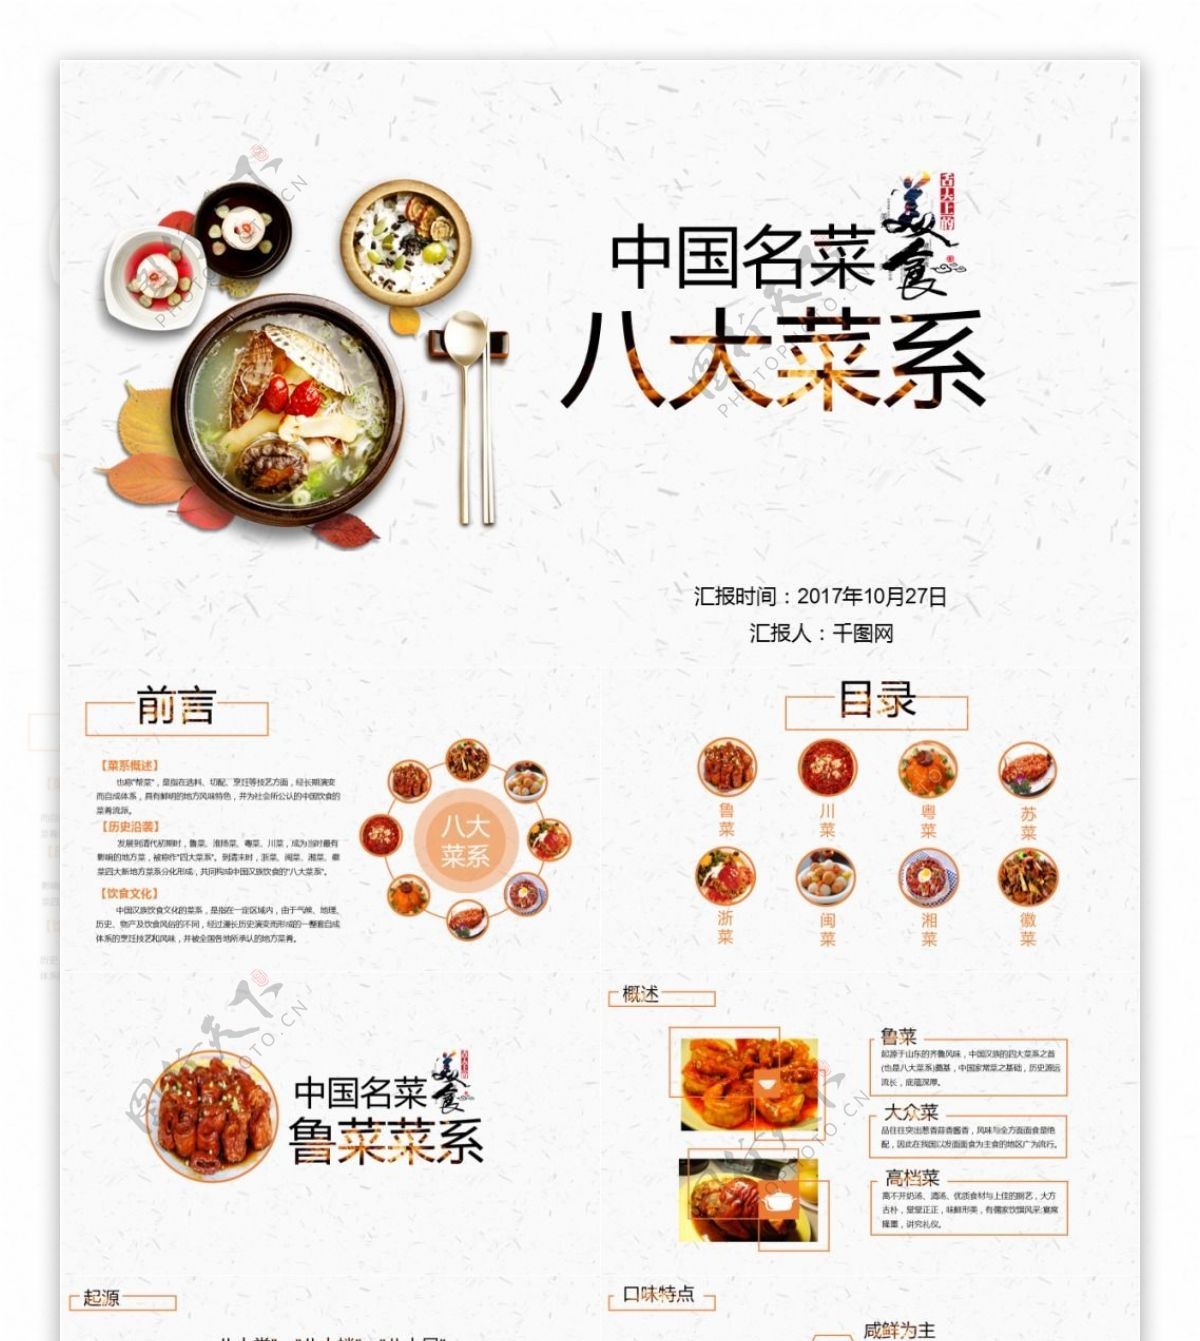 中国八大菜系PPT模板